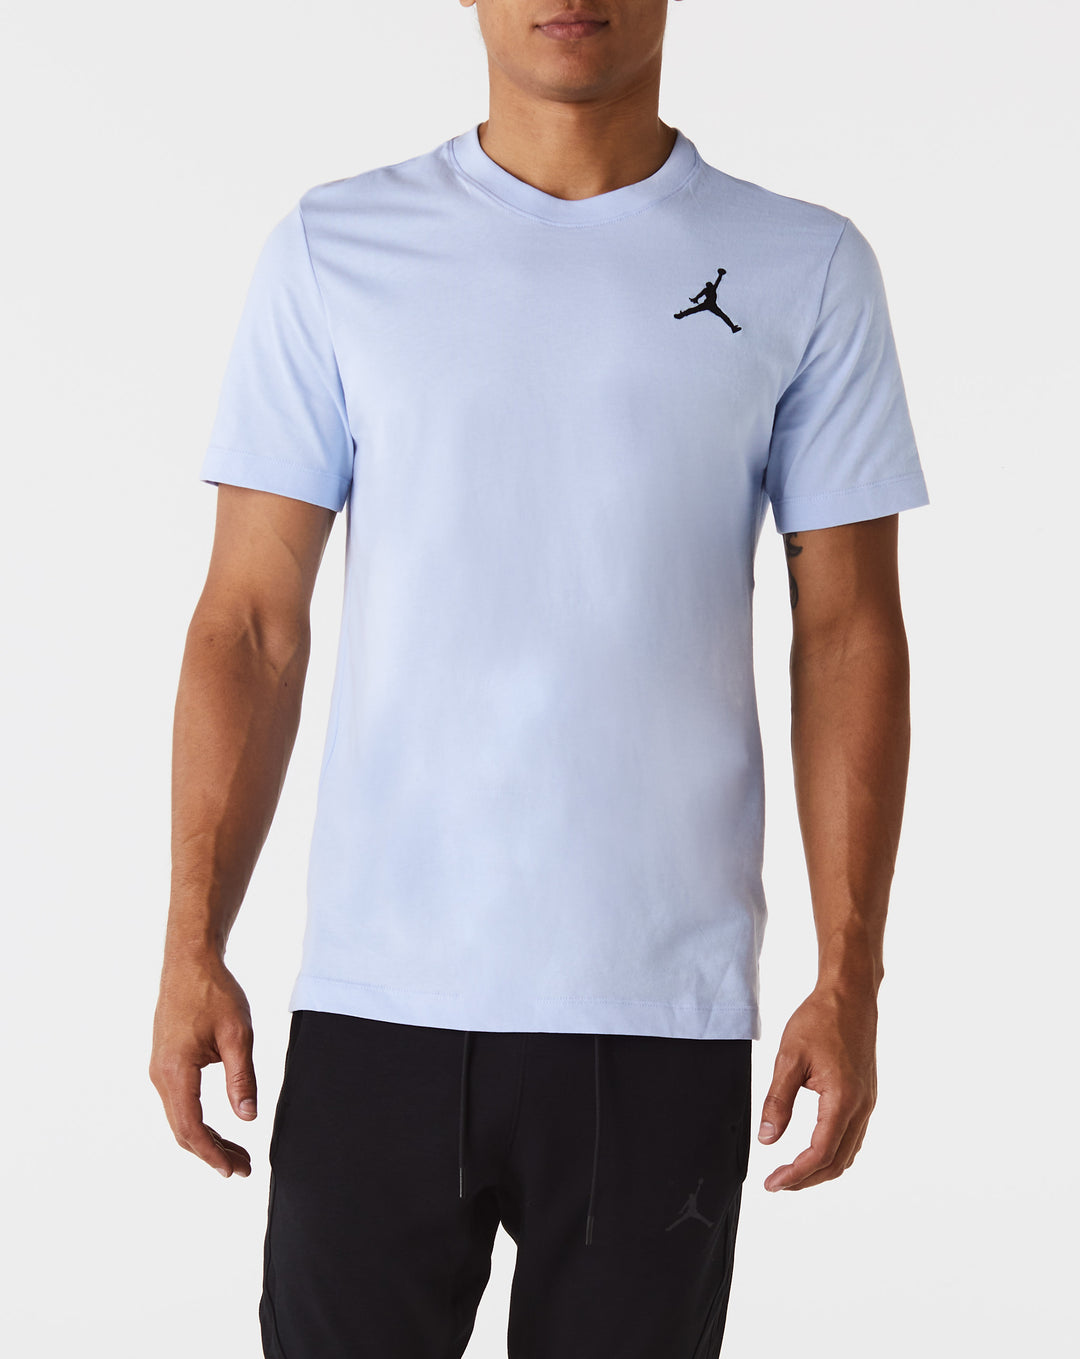 Air Jordan Jumpman T-Shirt  - XHIBITION